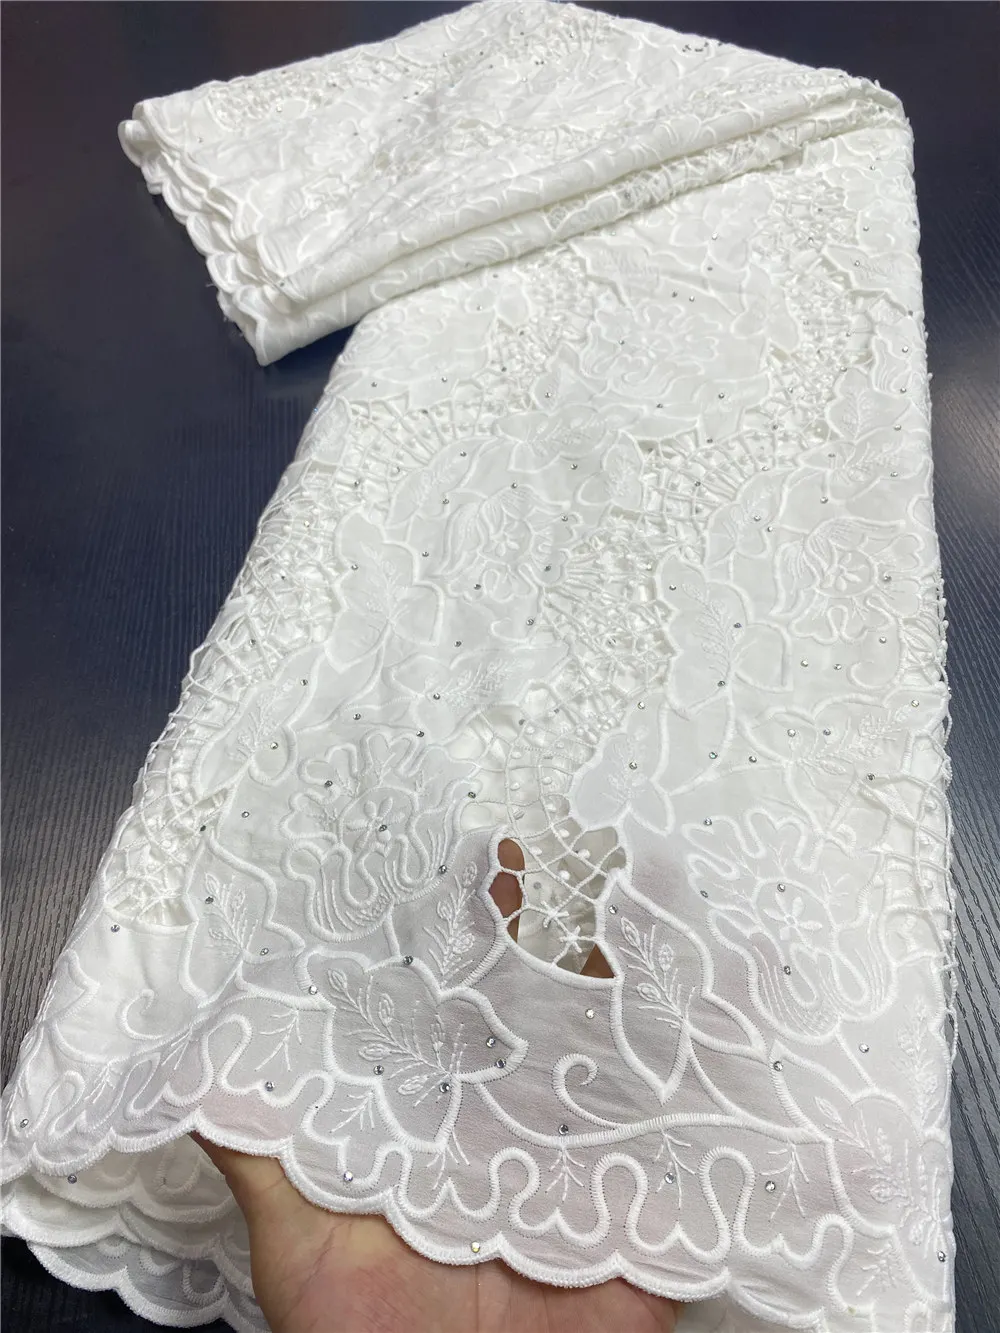 Afrikanske Lace Fabrics 2020 Høj Kvalitet Nigerianske Ledningen Guipure Lace Fabrics Bride Fransk Blonde Stof Til At Sy Kjole